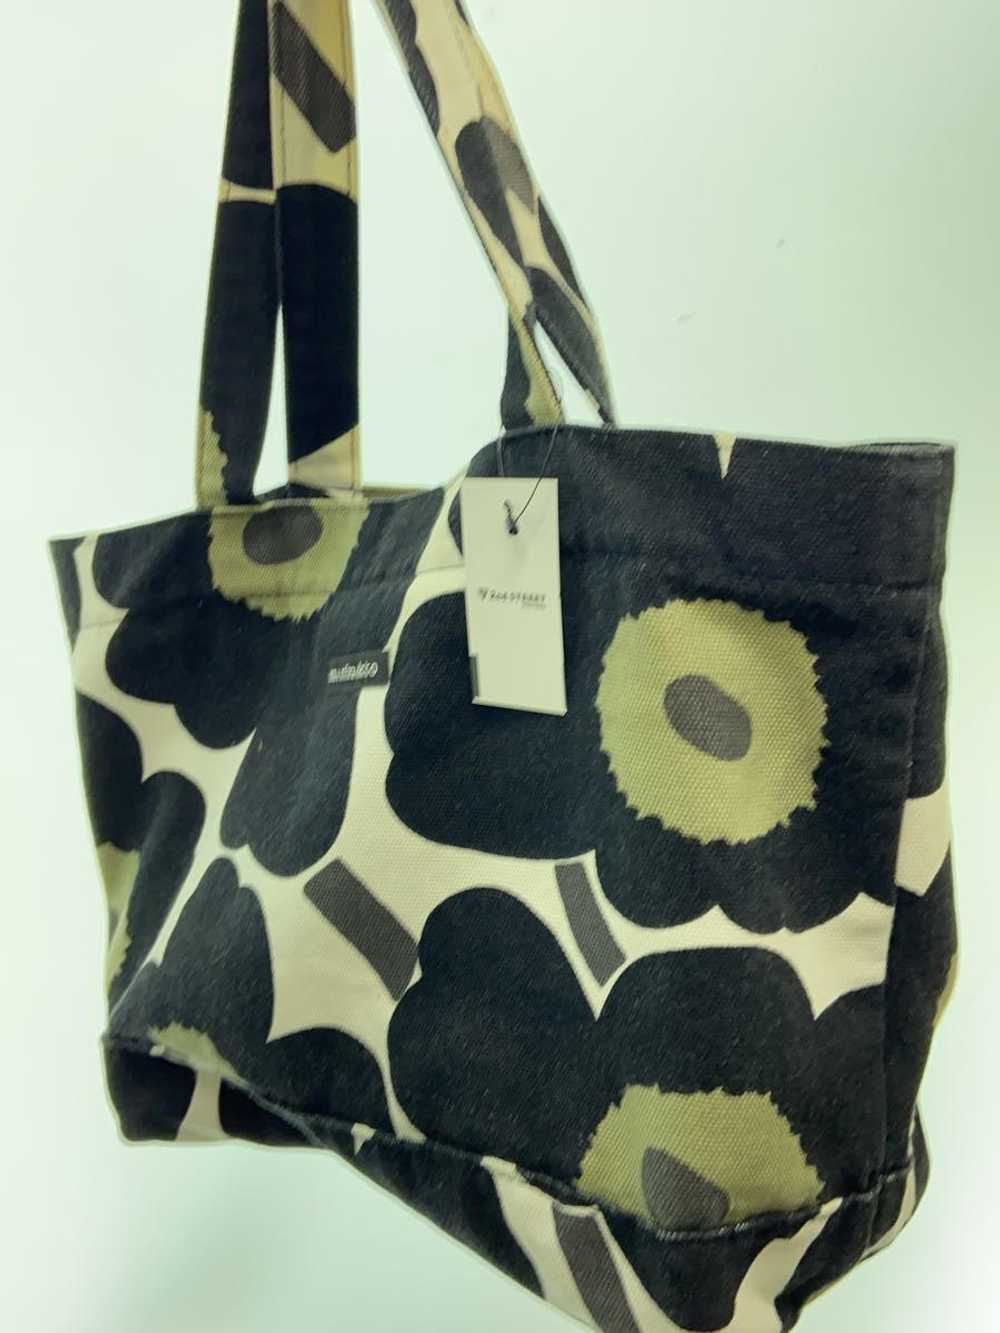 Marimekko Tote Bag/Cotton/Blk/Floral Pattern Bag - image 2